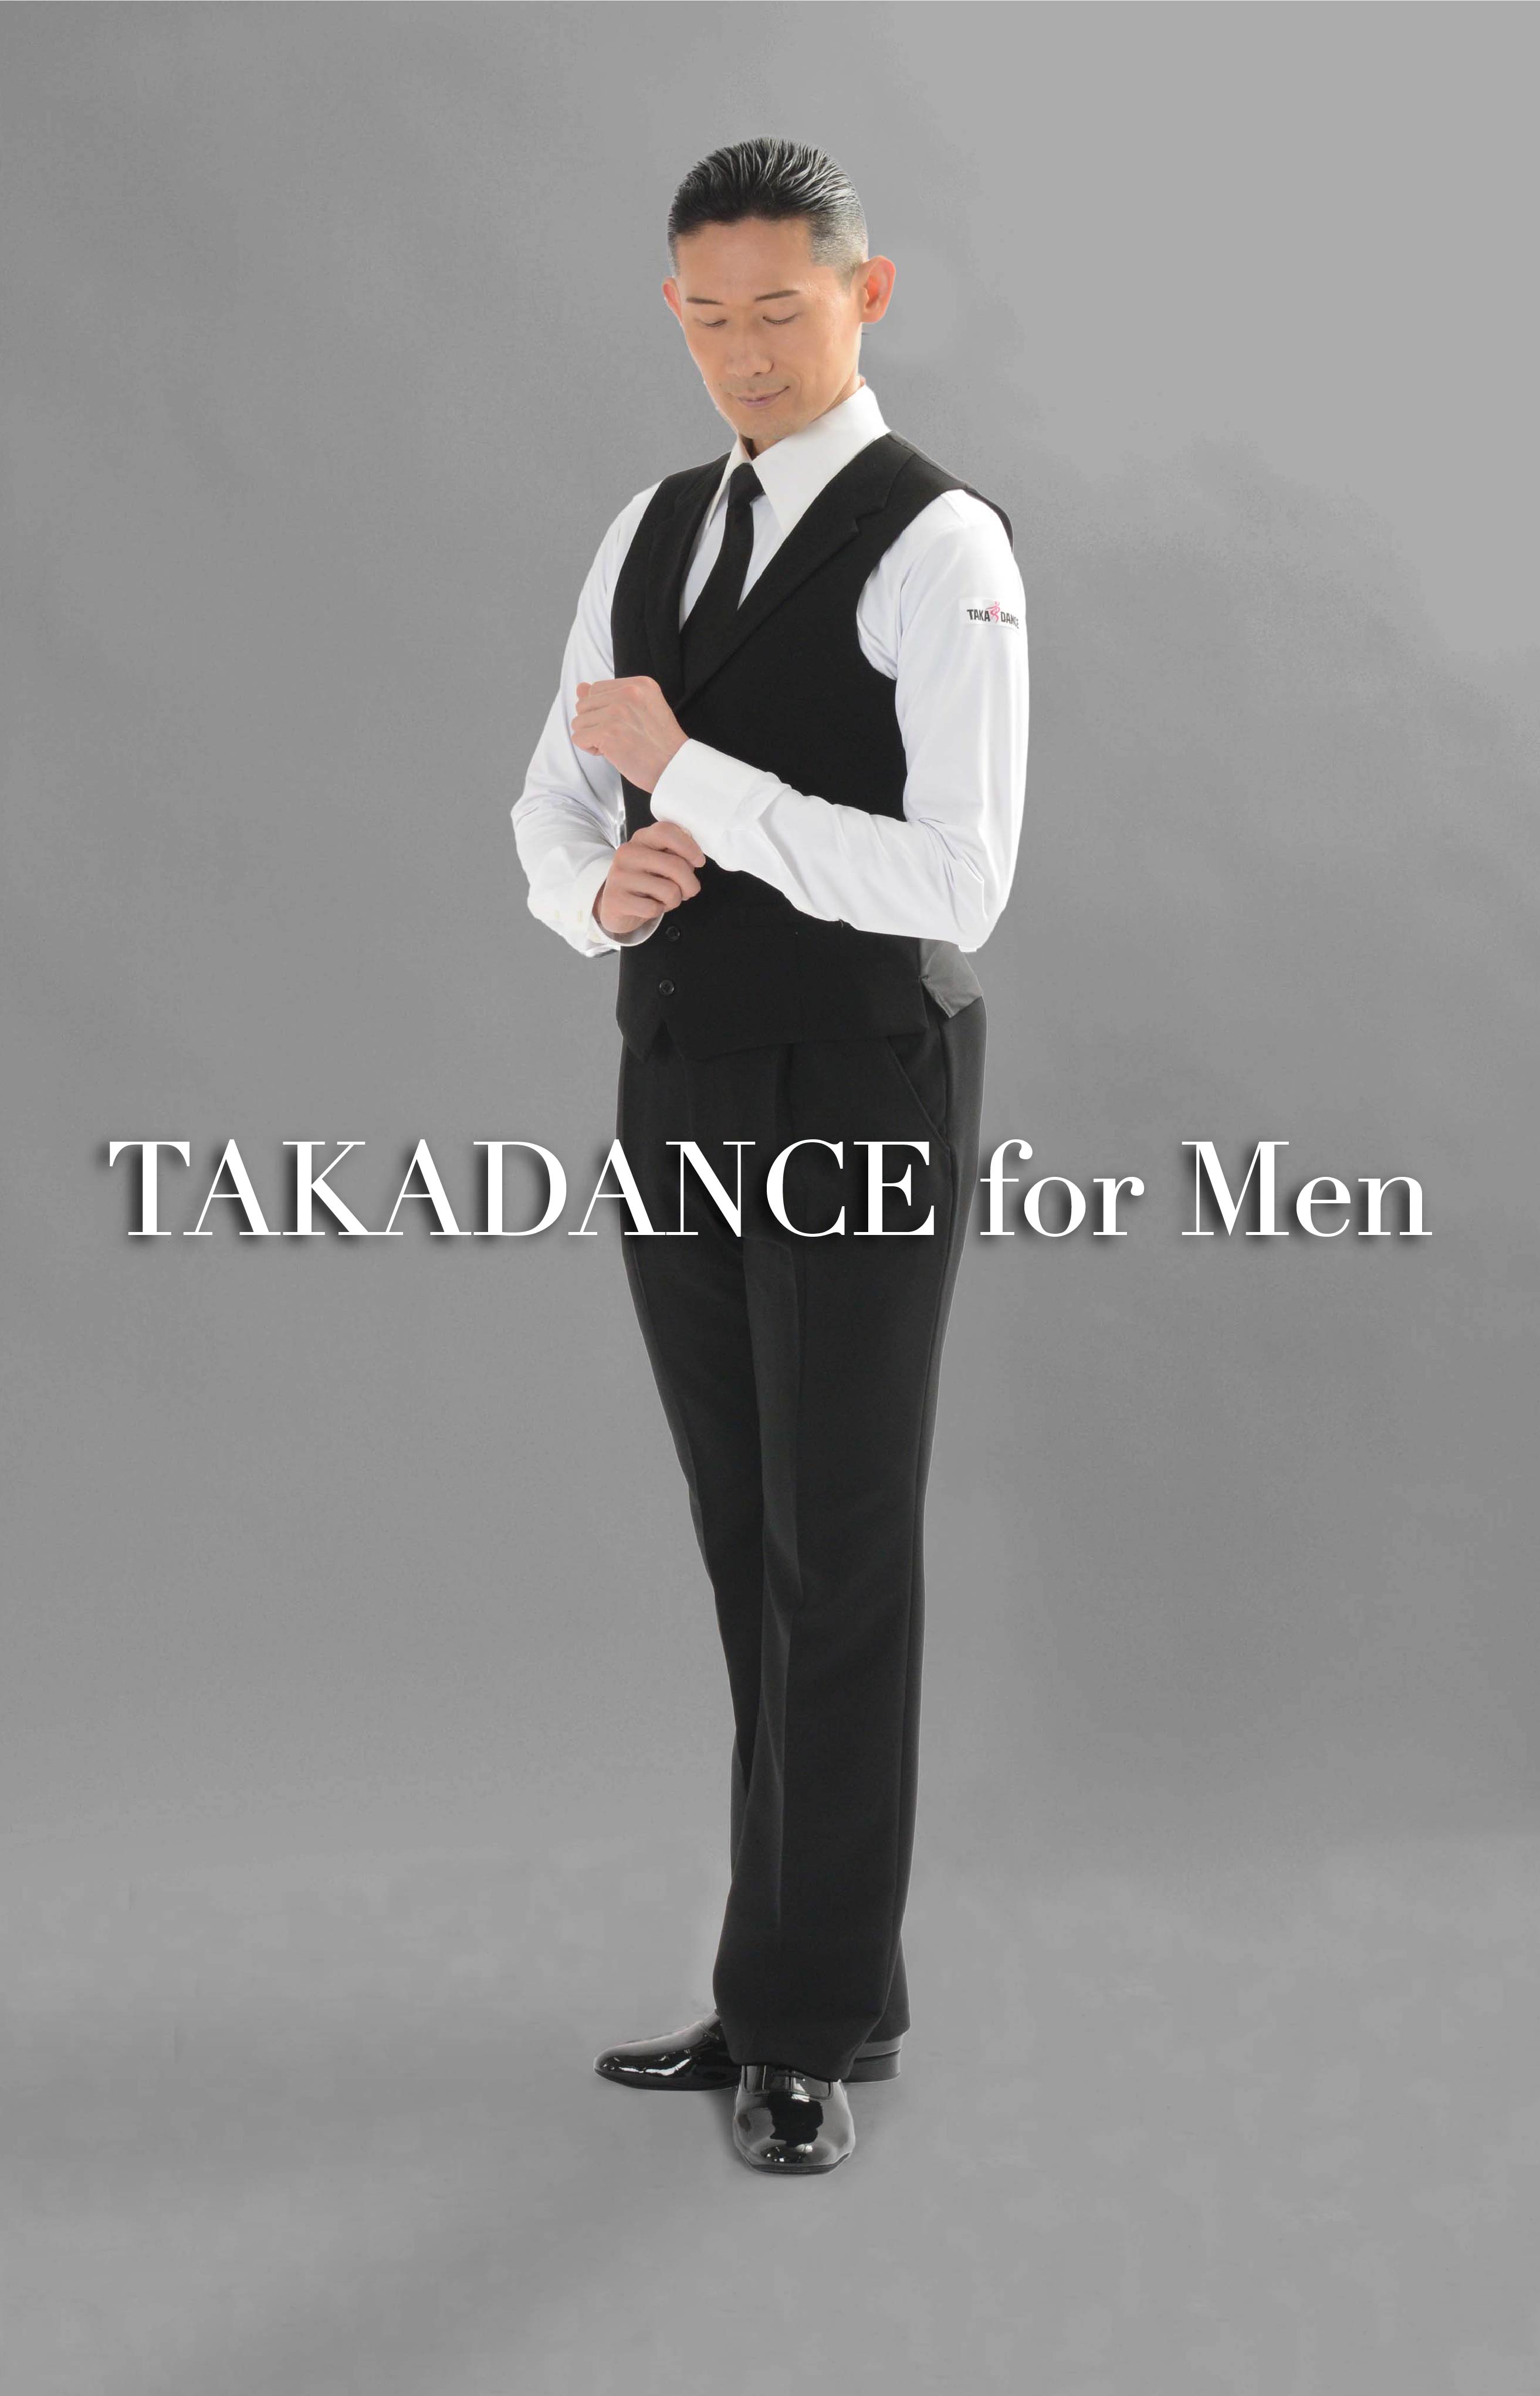 社交ダンス専門 通販サイト 【takadance.shop】 | TAKADANCE for Men